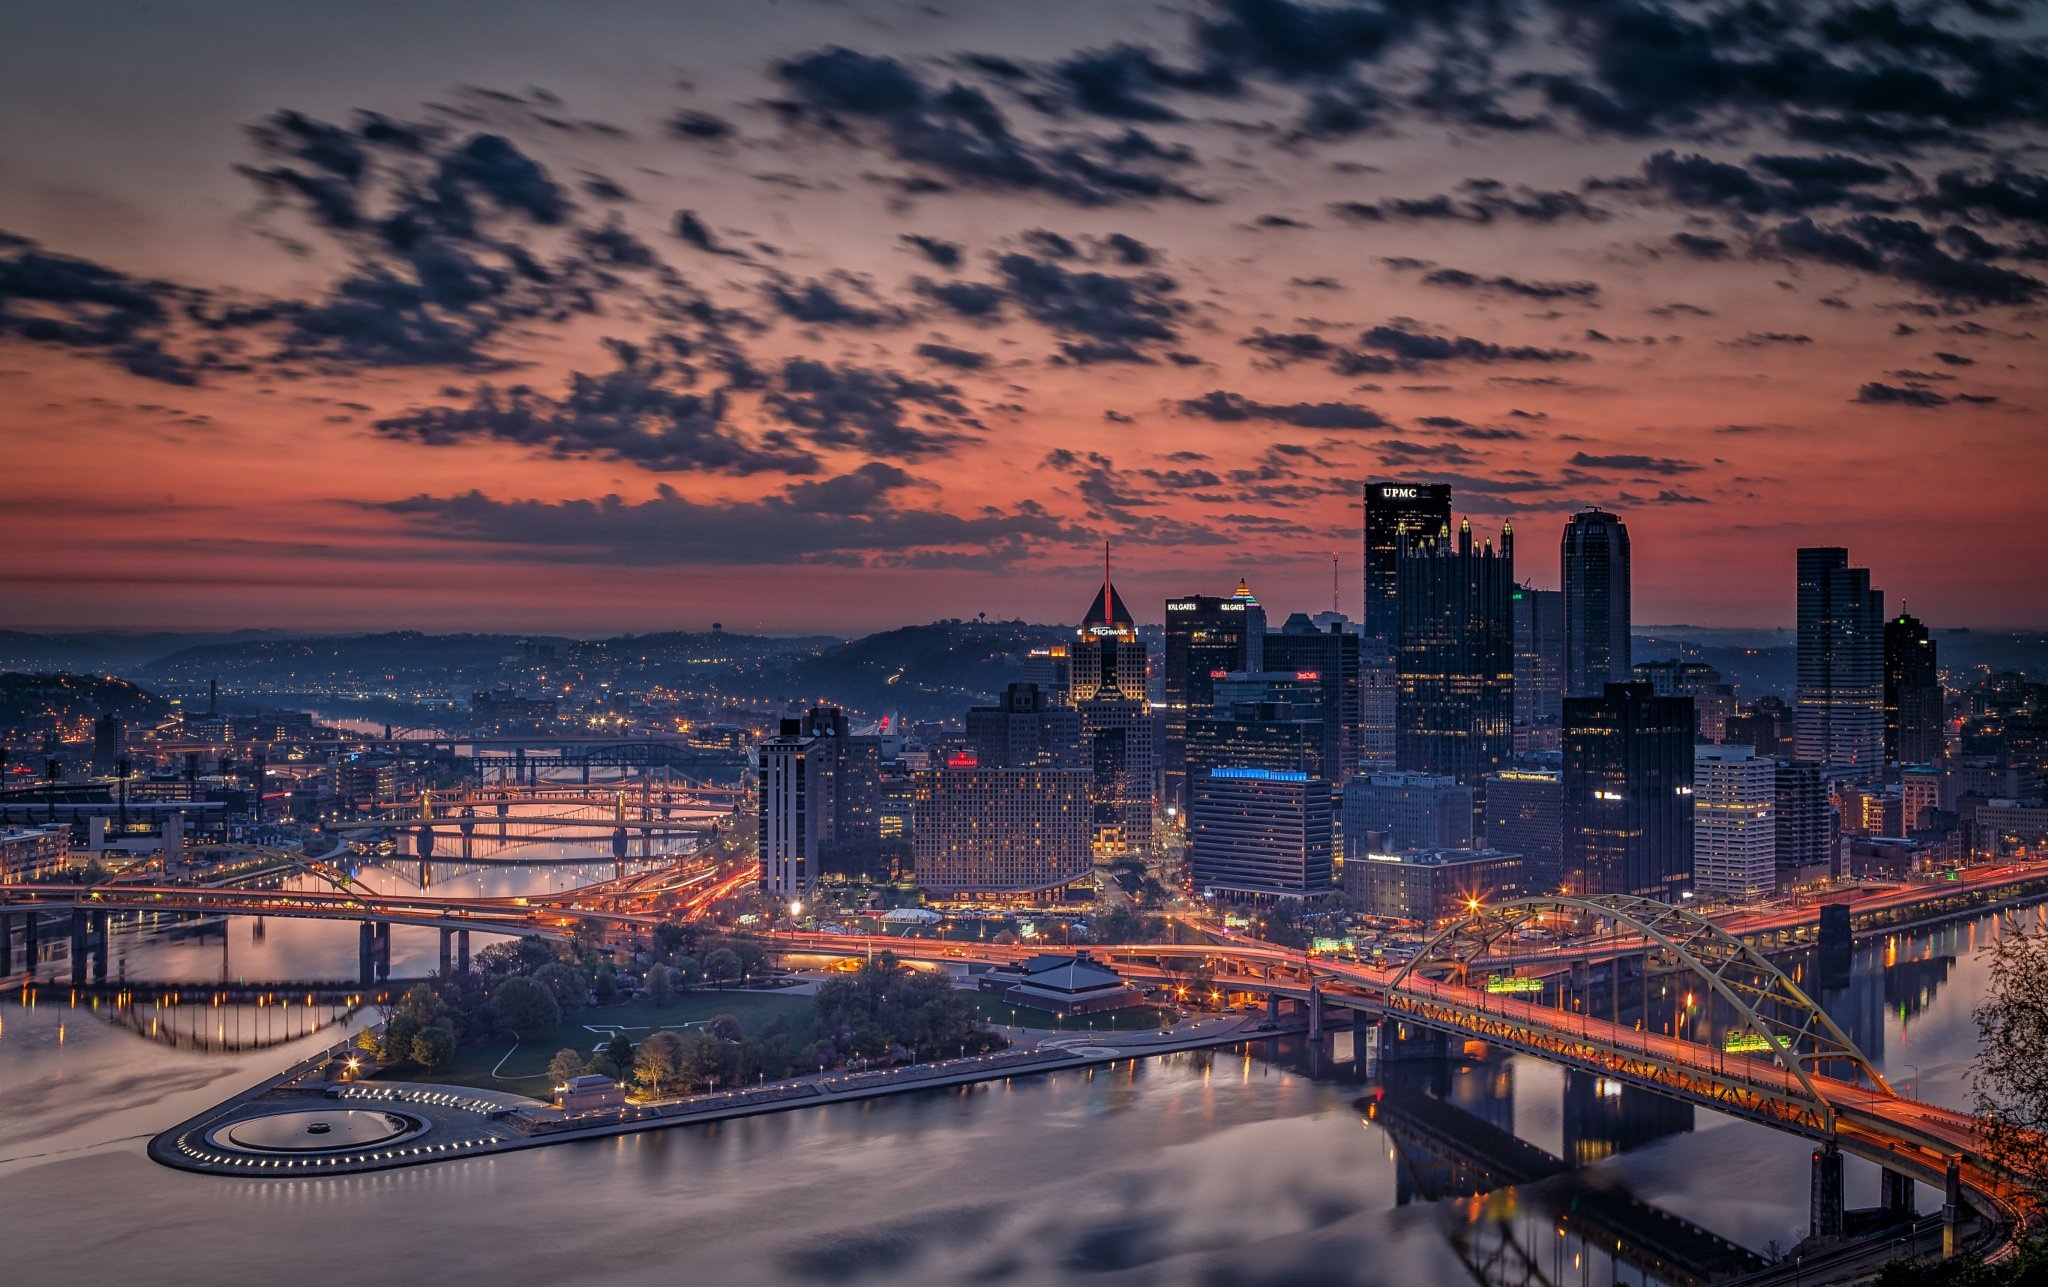 Evening bridges, Pittsburgh scenery, Cloud-filled skies, City's elegance, 2050x1290 HD Desktop